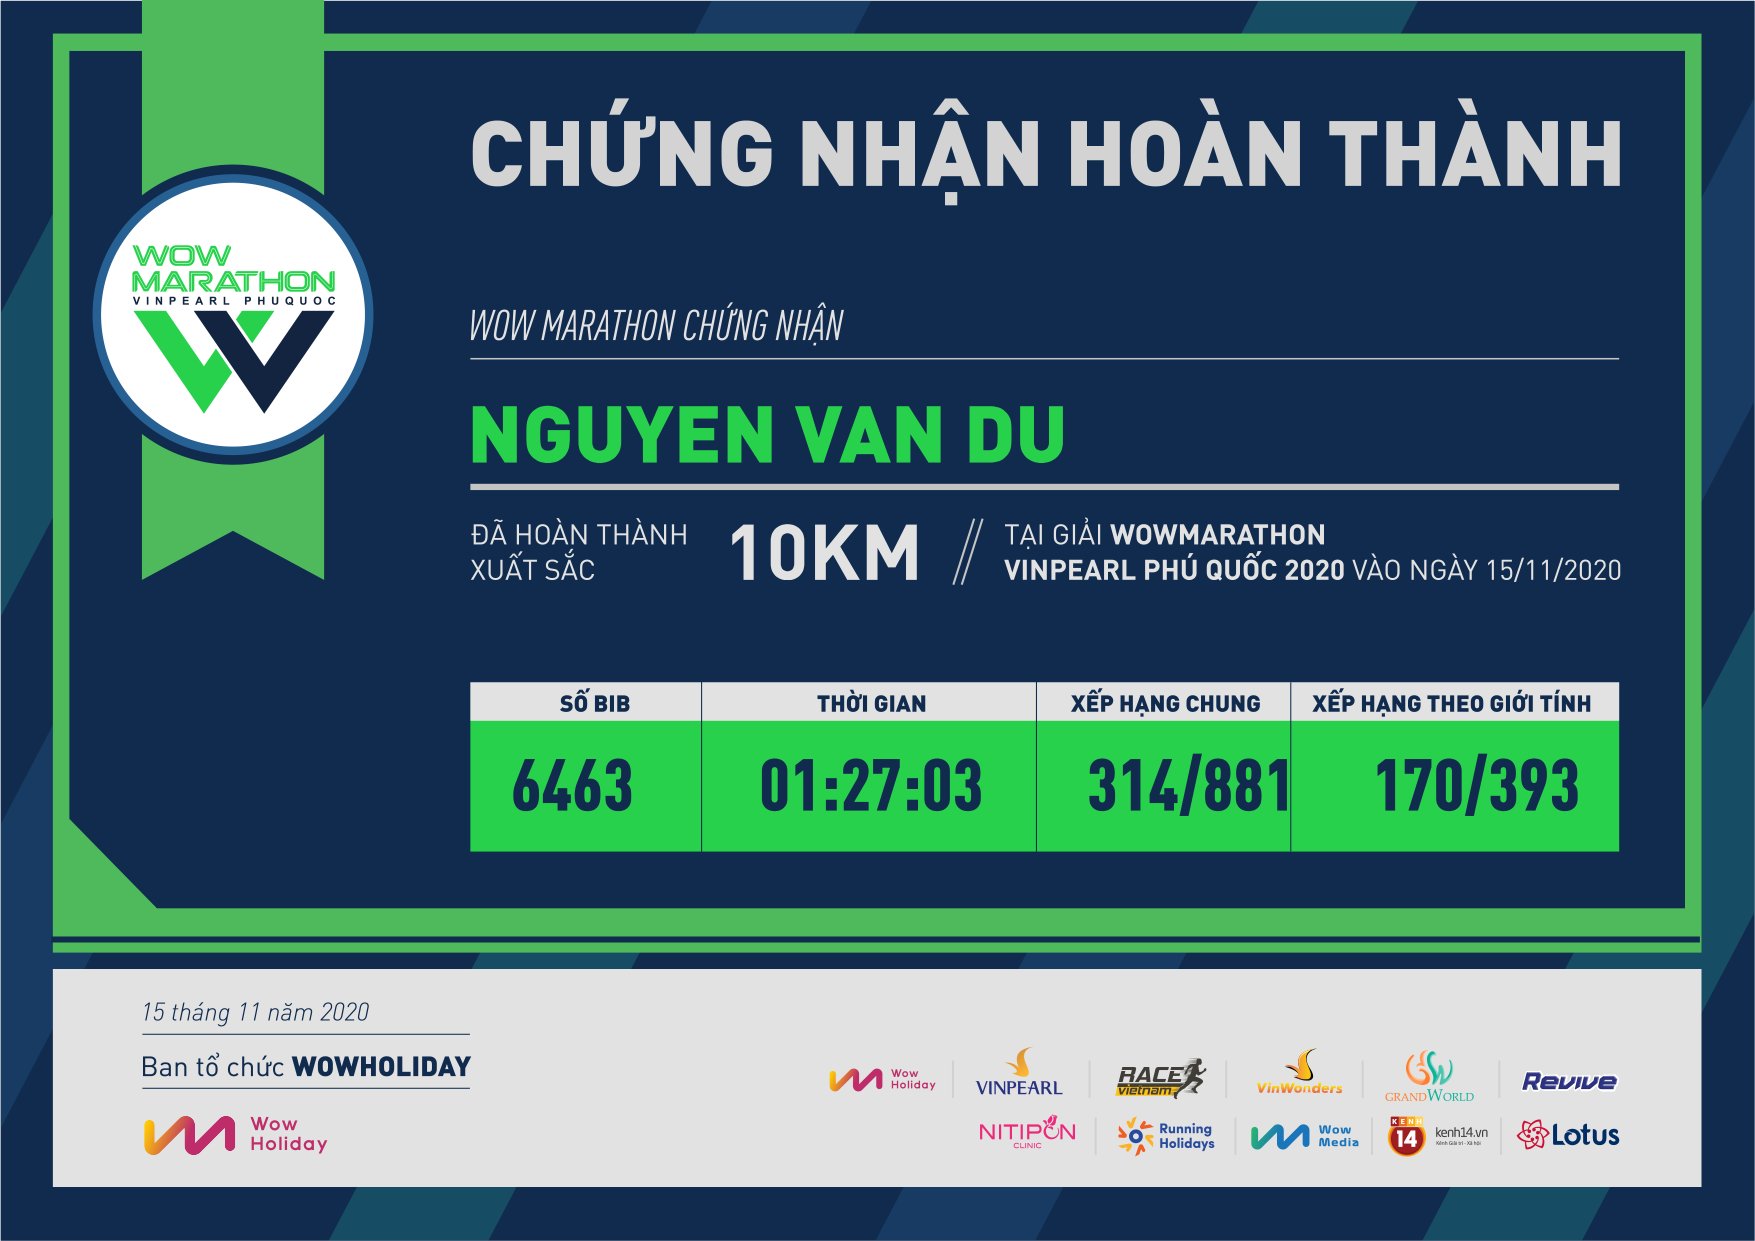 6463 - Nguyen van du